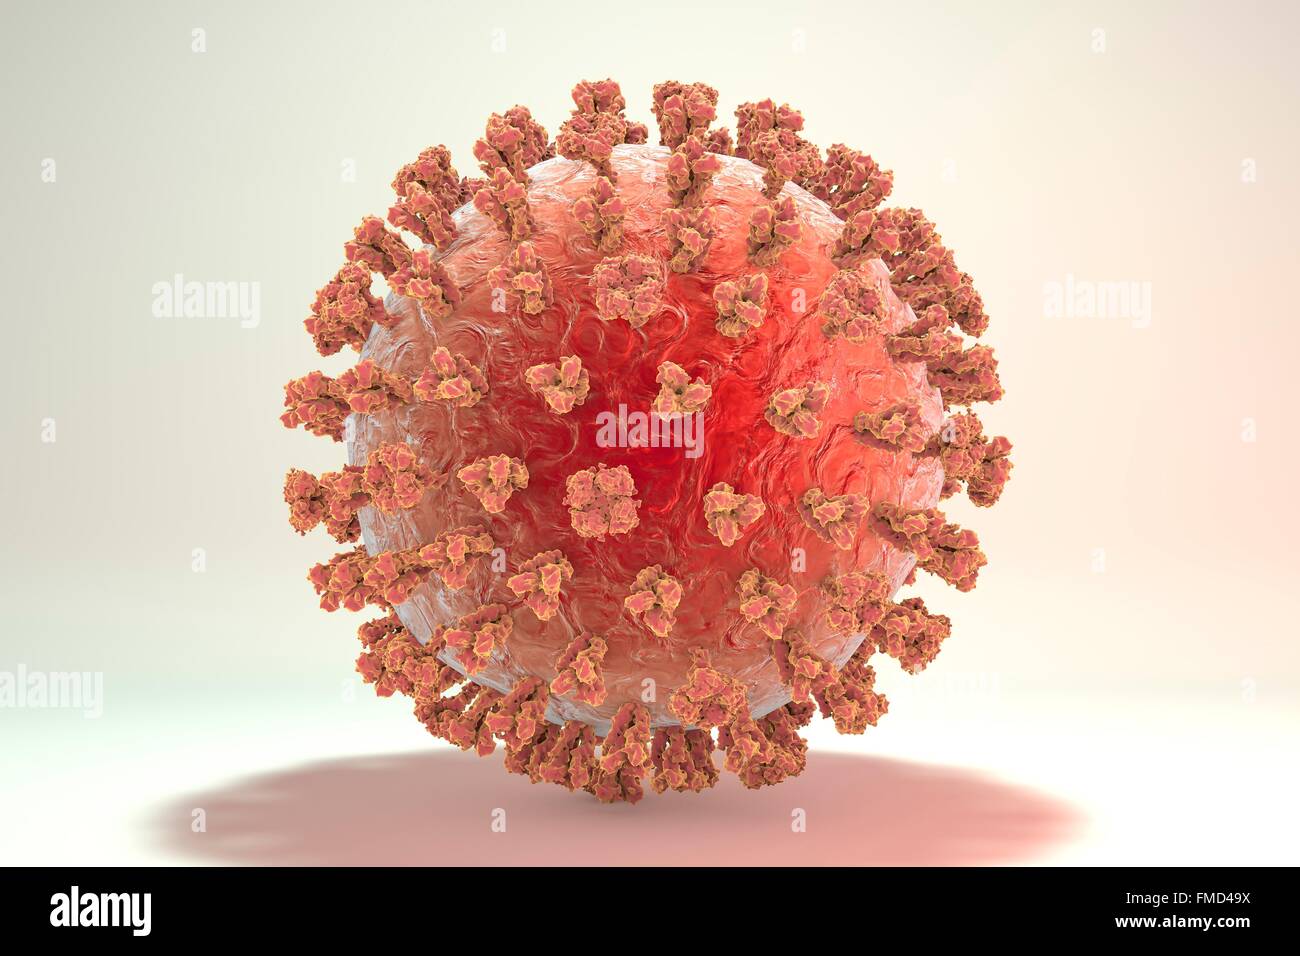 Schweinegrippe-Virus H1N1 Illustration zeigt Influenza-Virus mit Oberfläche Glykoprotein spikes Hämagglutinin (HA, Trimer) und Neuraminidase (NA, Tetramer). Hämagglutinin beteiligt sich an Anlage eines Virus an menschliche Zellen der Atemwege und Neuraminidase an eine Freisetzung des Virus aus einer Zelle. Stockfoto